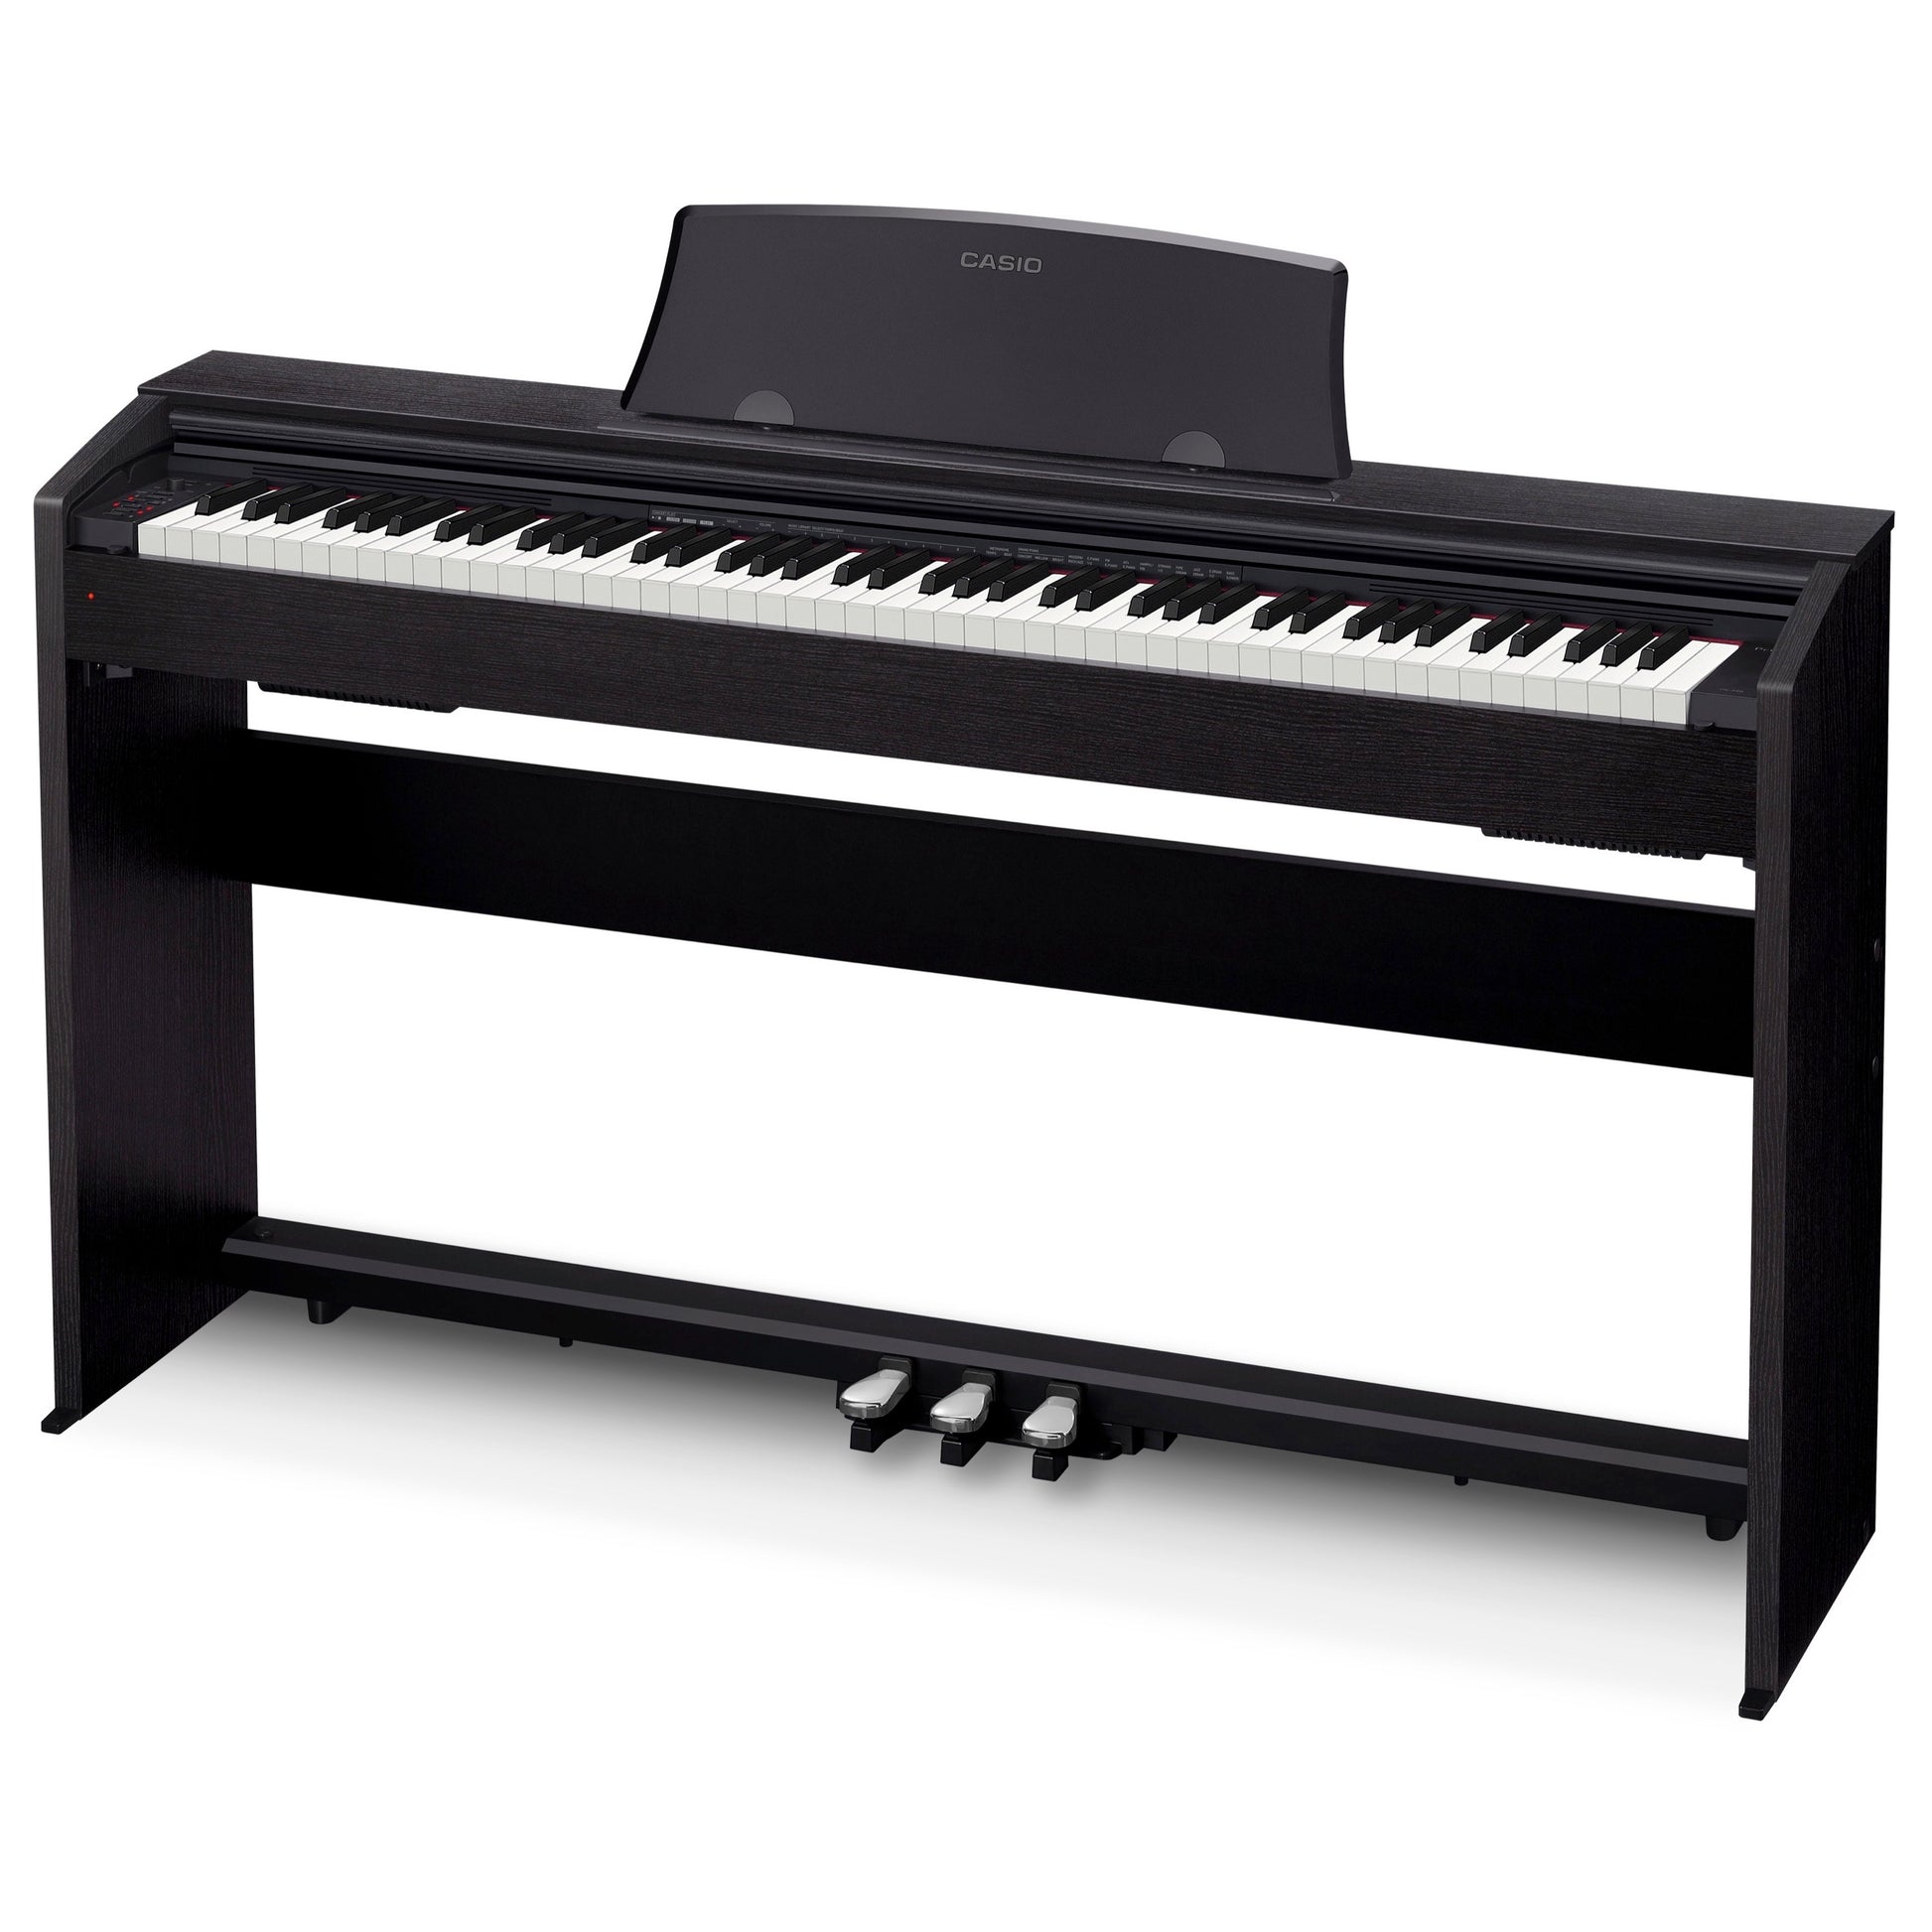 Casio PX-770 Privia Digital Piano, Black